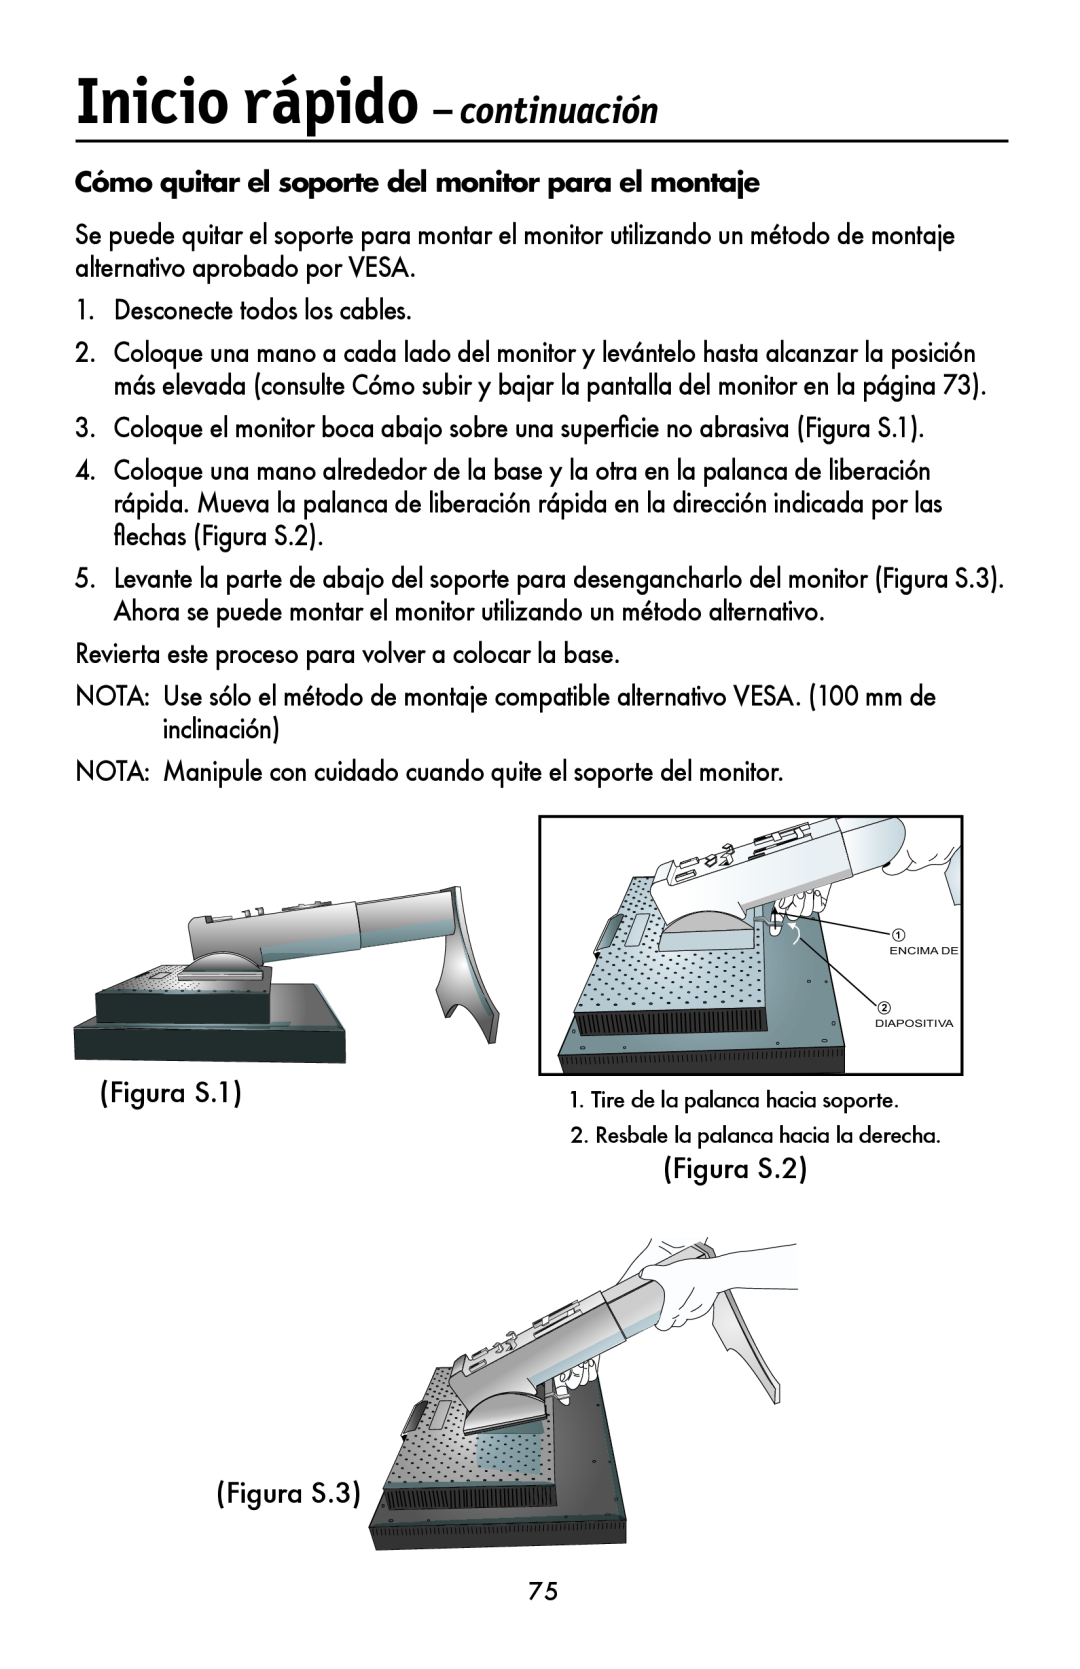 NEC LCD1990FXTM user manual Cómo quitar el soporte del monitor para el montaje, Inicio rápido - continuación 